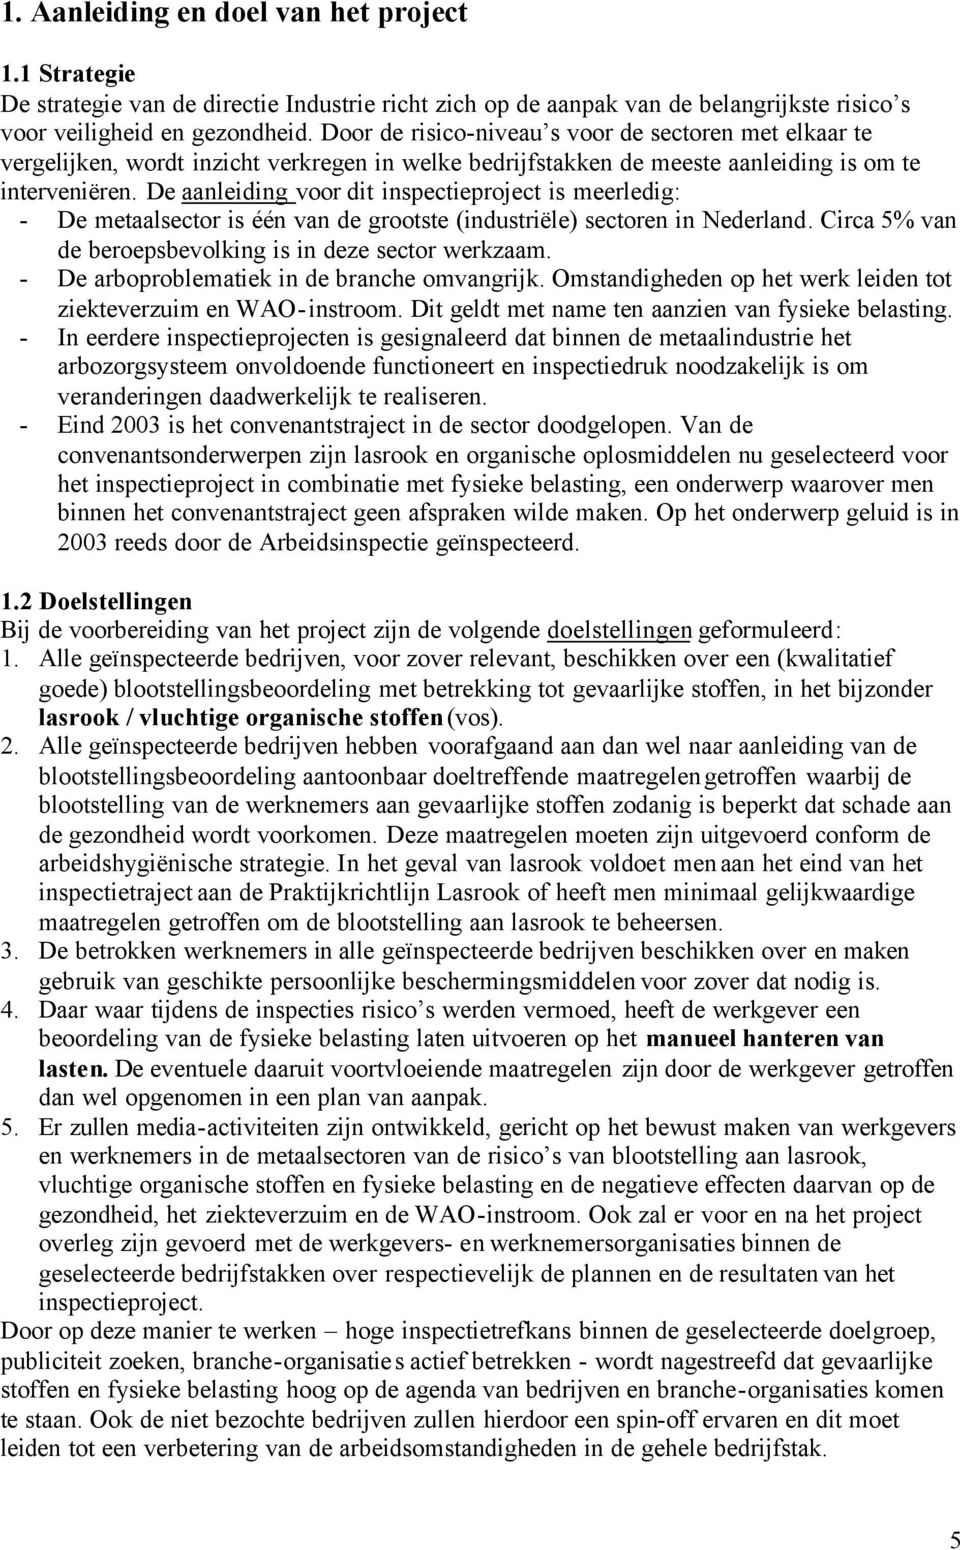 De aanleiding voor dit inspectieproject is meerledig: - De metaalsector is één van de grootste (industriële) sectoren in Nederland. Circa 5% van de beroepsbevolking is in deze sector werkzaam.